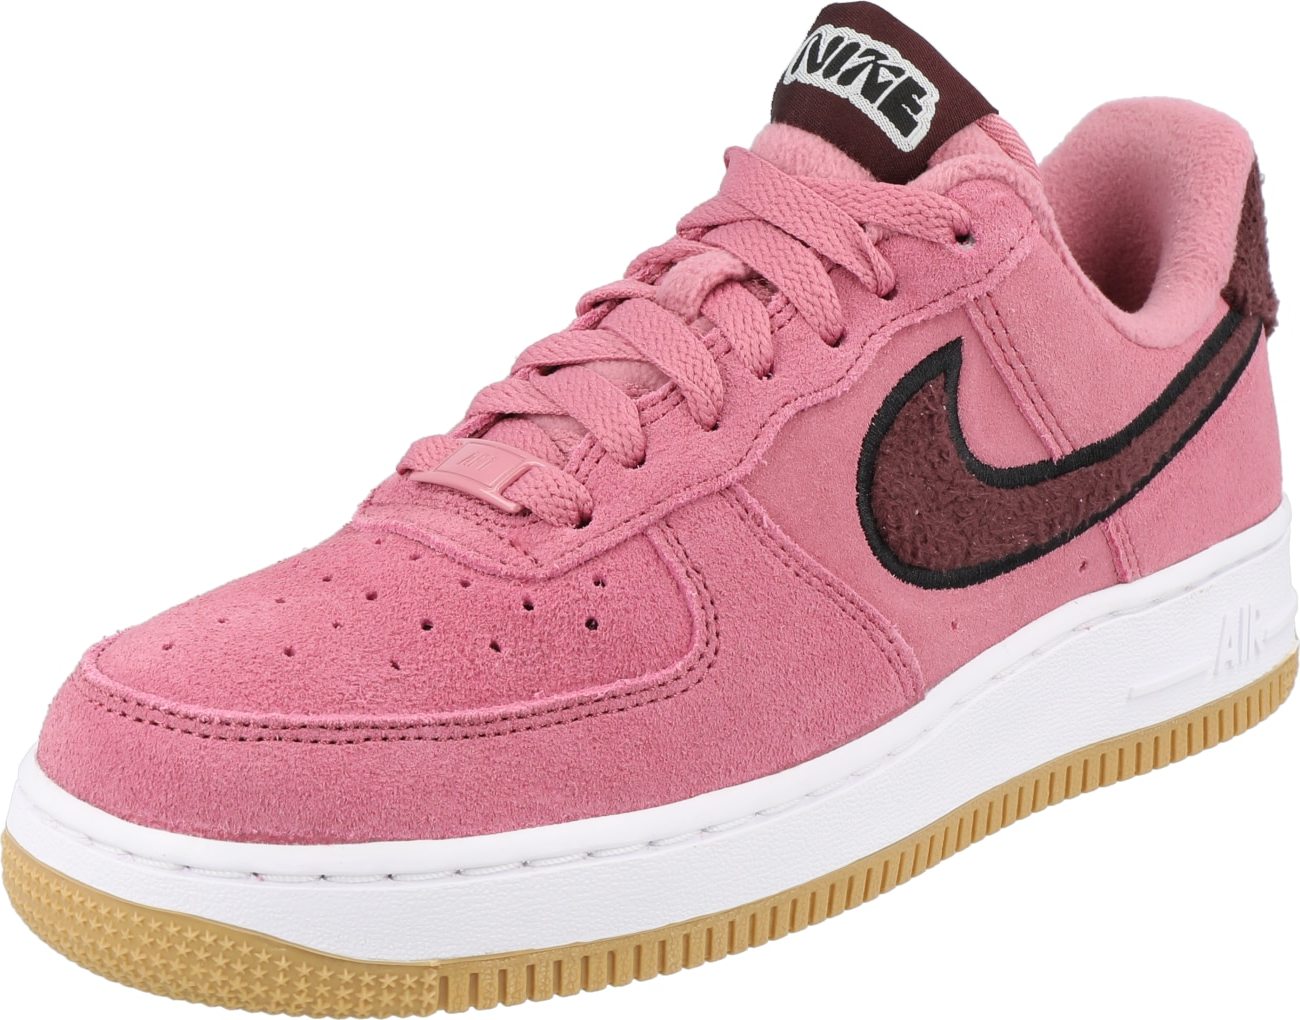 Nike Sportswear Tenisky 'Air Force 1' hnědá / světle růžová / černá